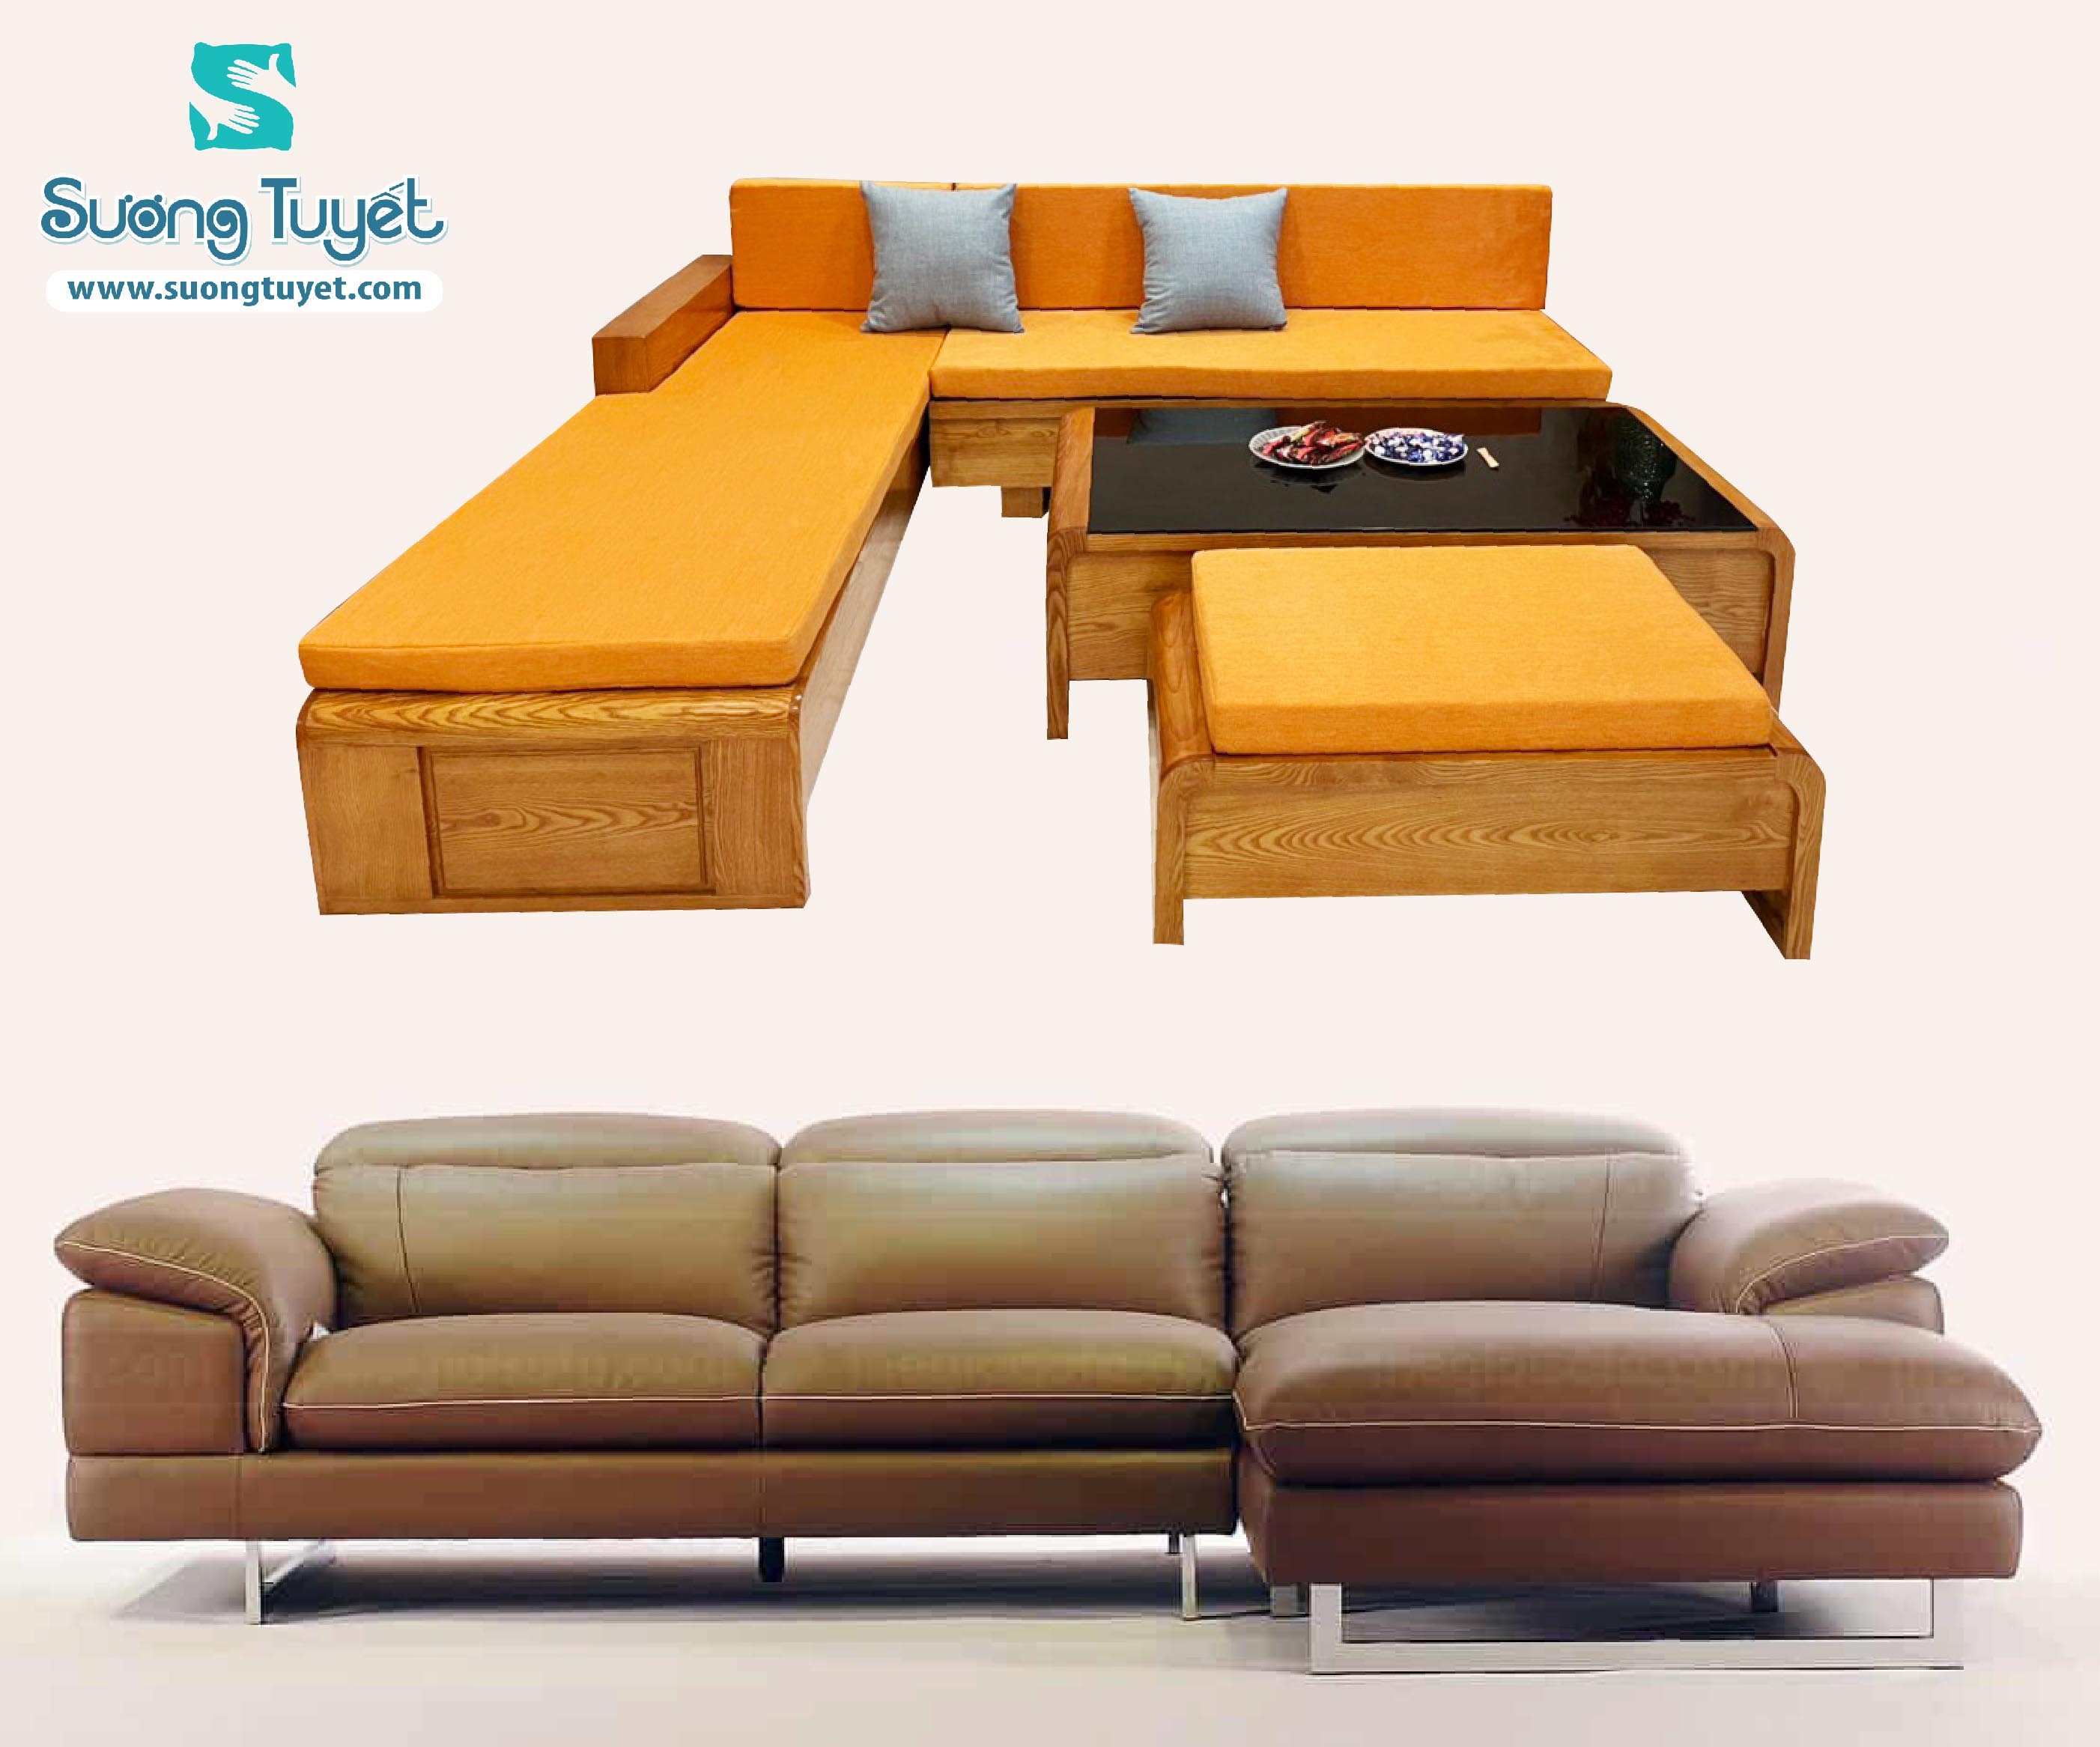 Sofa gỗ nhập khẩu 2024 TA-1902 với thiết kế đầy phong cách và hiện đại. Chất liệu gỗ hồ đào được chọn lọc cẩn thận từ những nguồn gốc uy tín giúp tăng tính thẩm mỹ cho sản phẩm. Bên cạnh đó, sofa này còn có tính năng đa dạng như có thể tháo rời và trang bị thêm bảng đẹp mắt. Mua sofa này ngay để tận hưởng không gian sống hoàn hảo nhất.